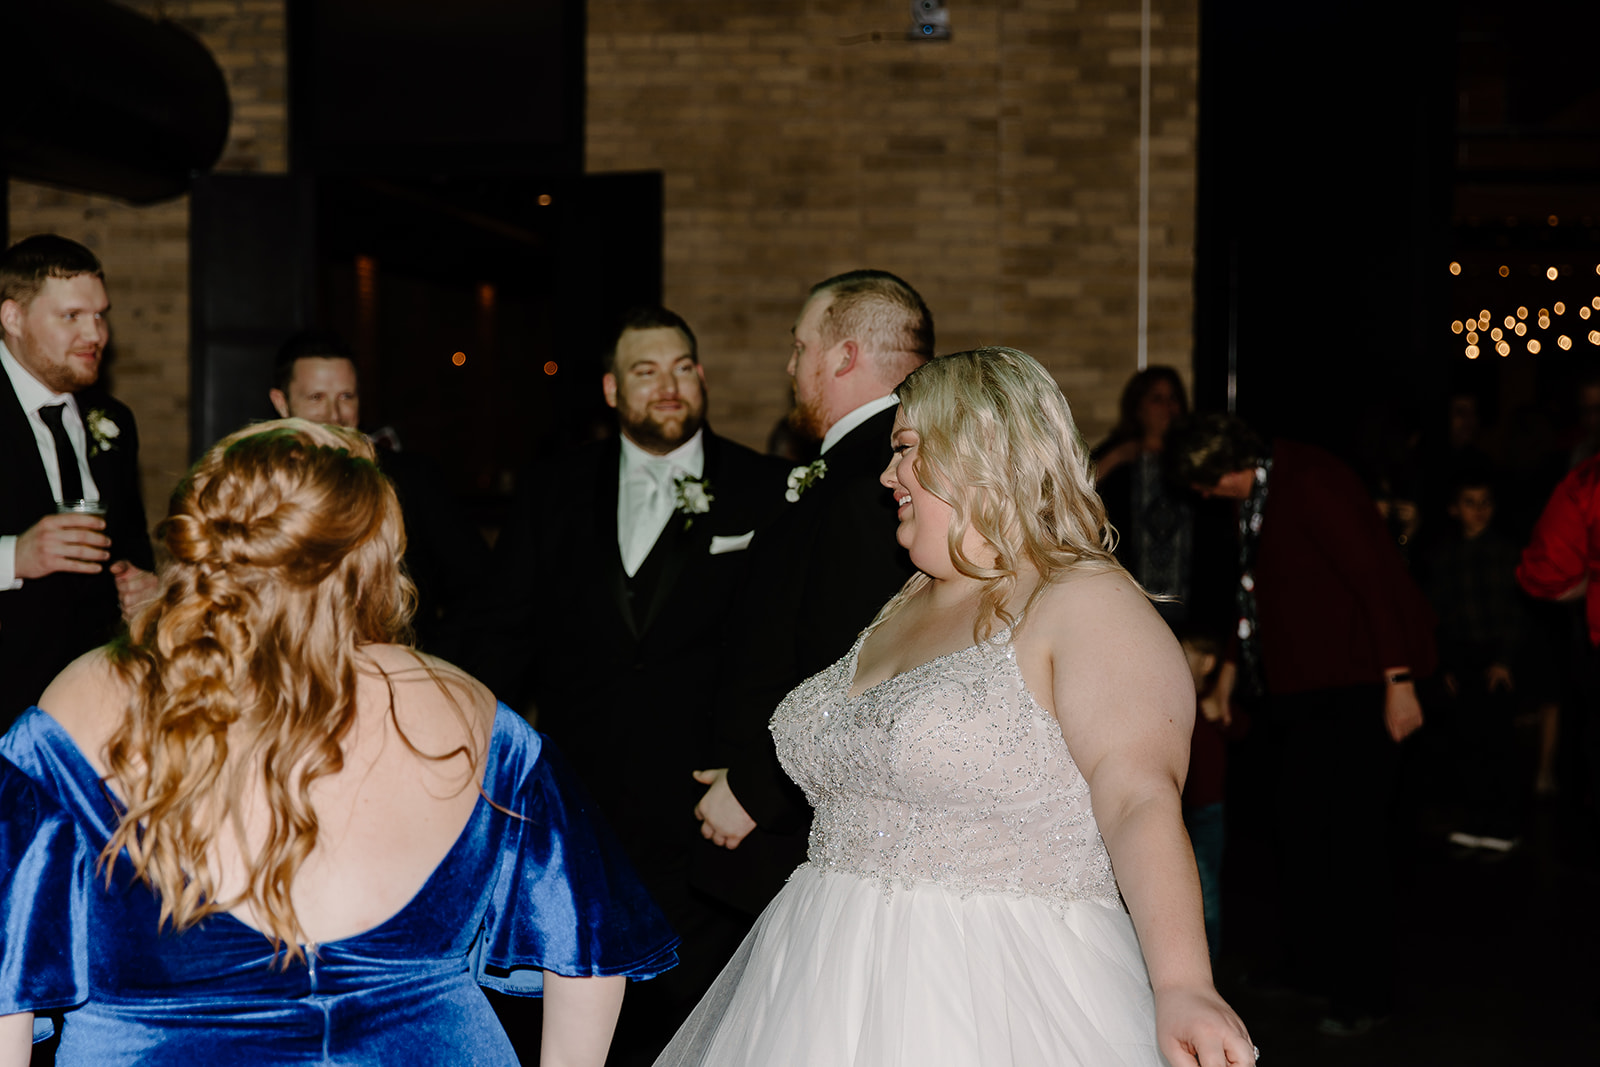 Bride enjoying the dance floor